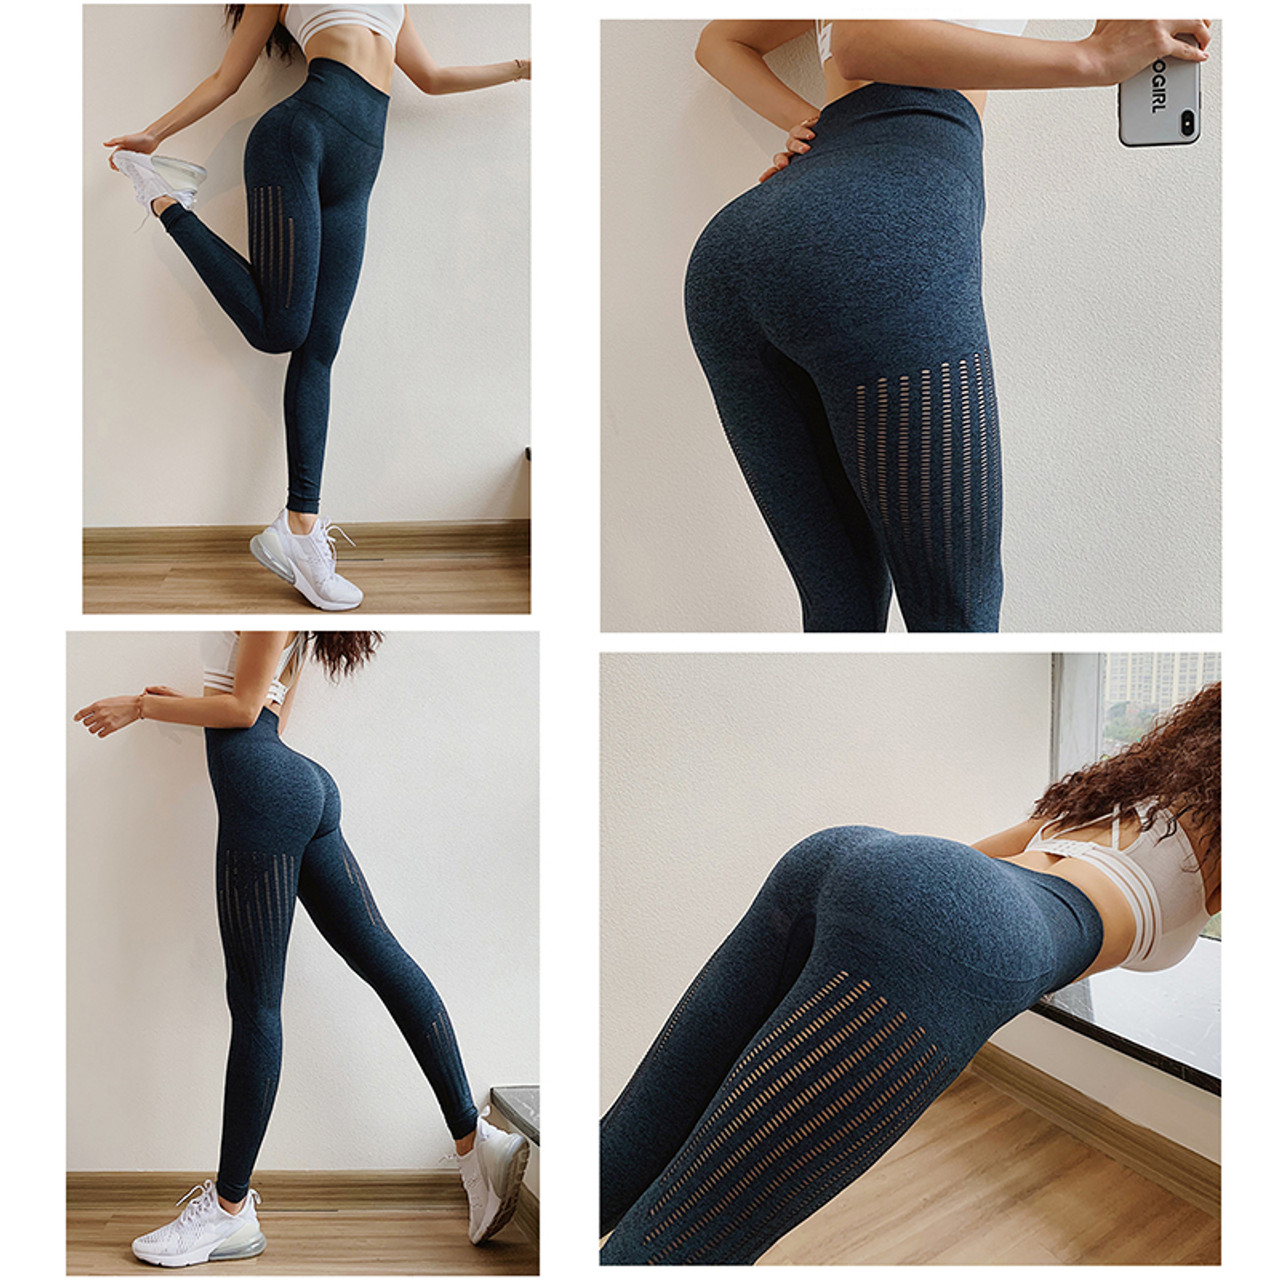 Girls Ass In Pants